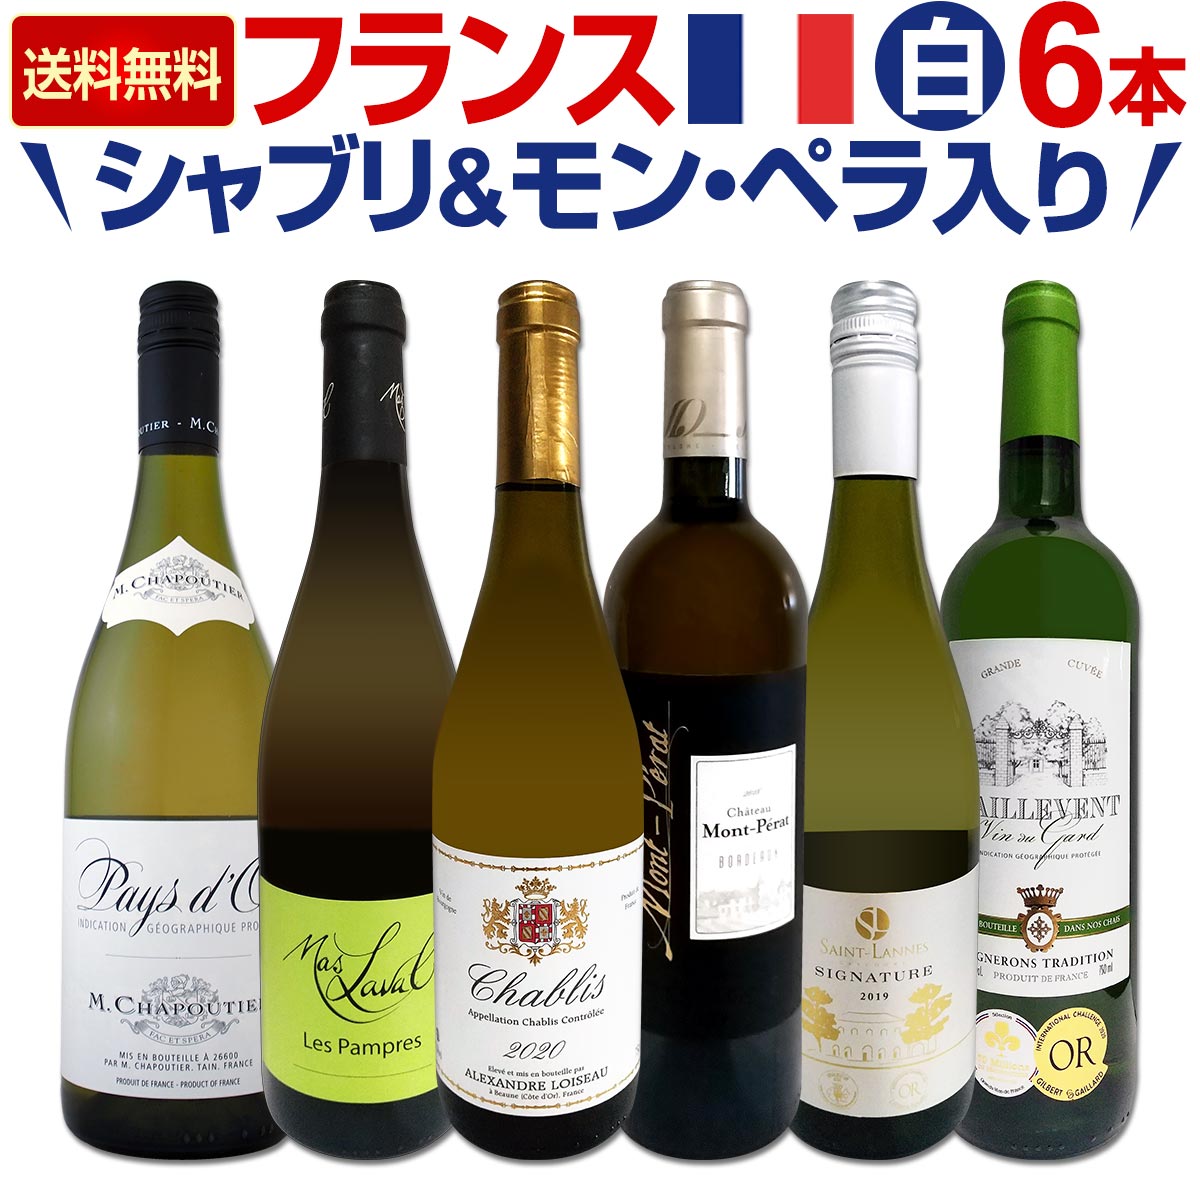 【送料無料】≪シャブリ&モン・ペラ白≫充実感たっぷりのフランス白ワイン6本セット